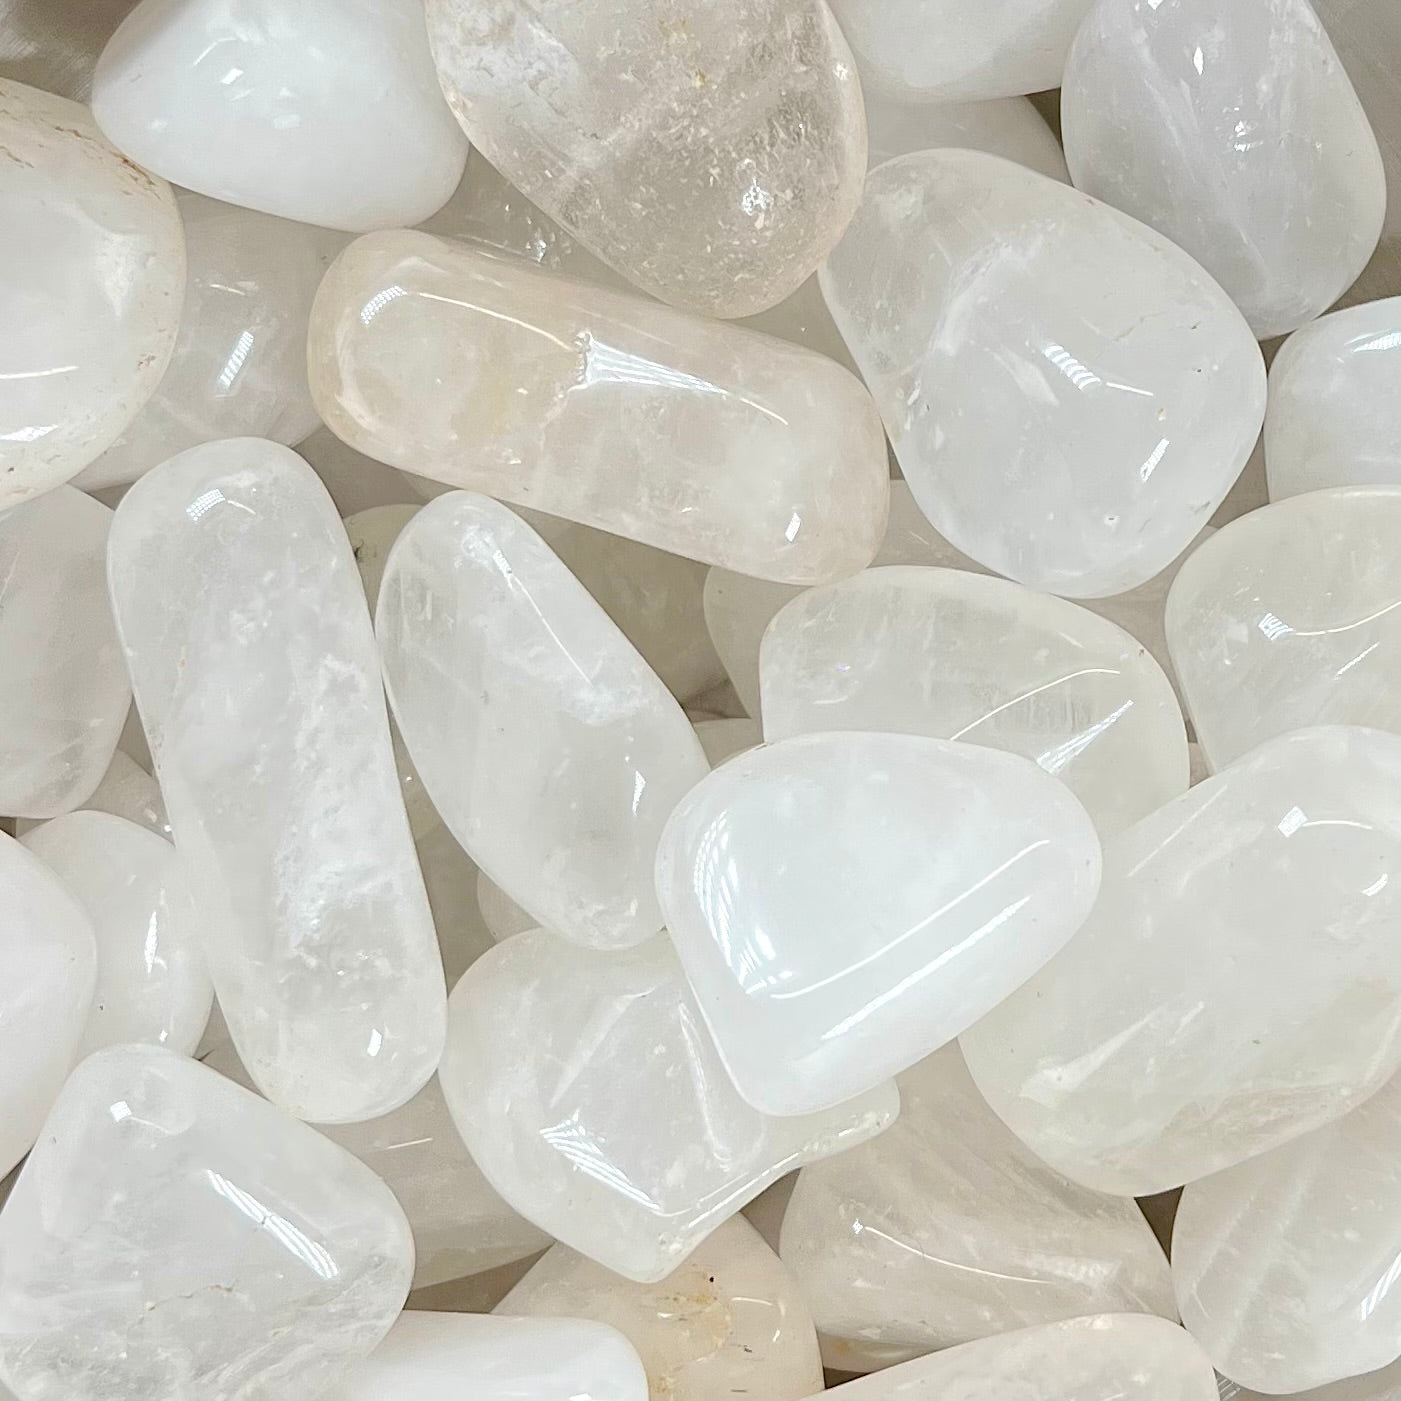 Palm sized tumbled white quartz stones.